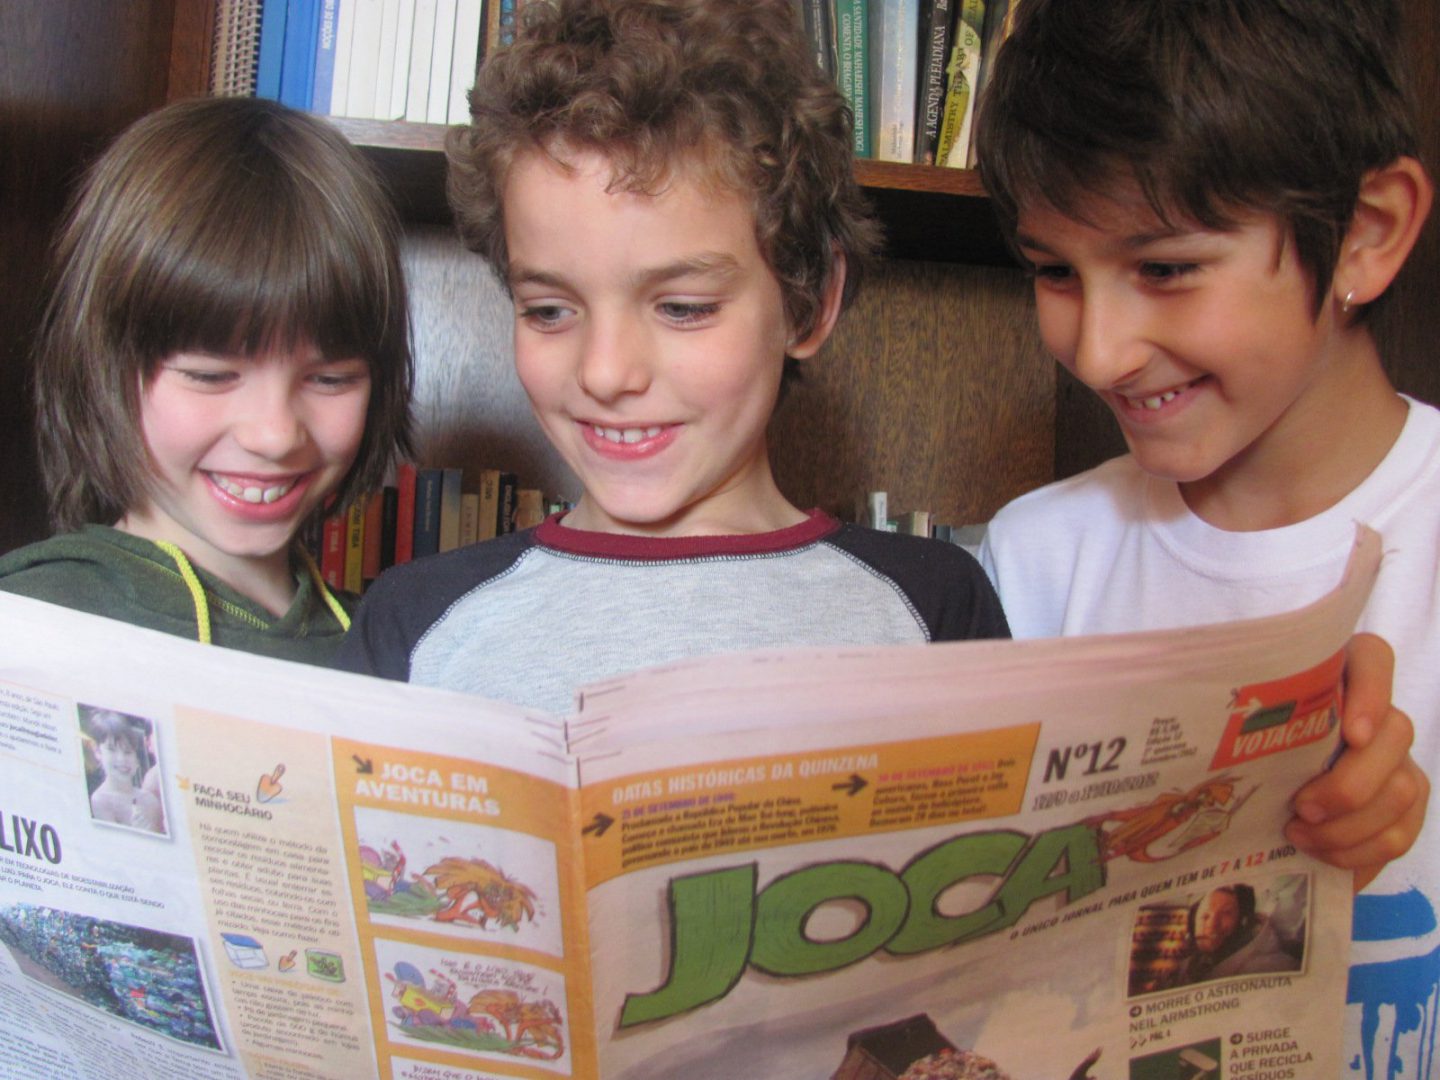 Três crianças estão lendo uma edição do Joca e sorrindo